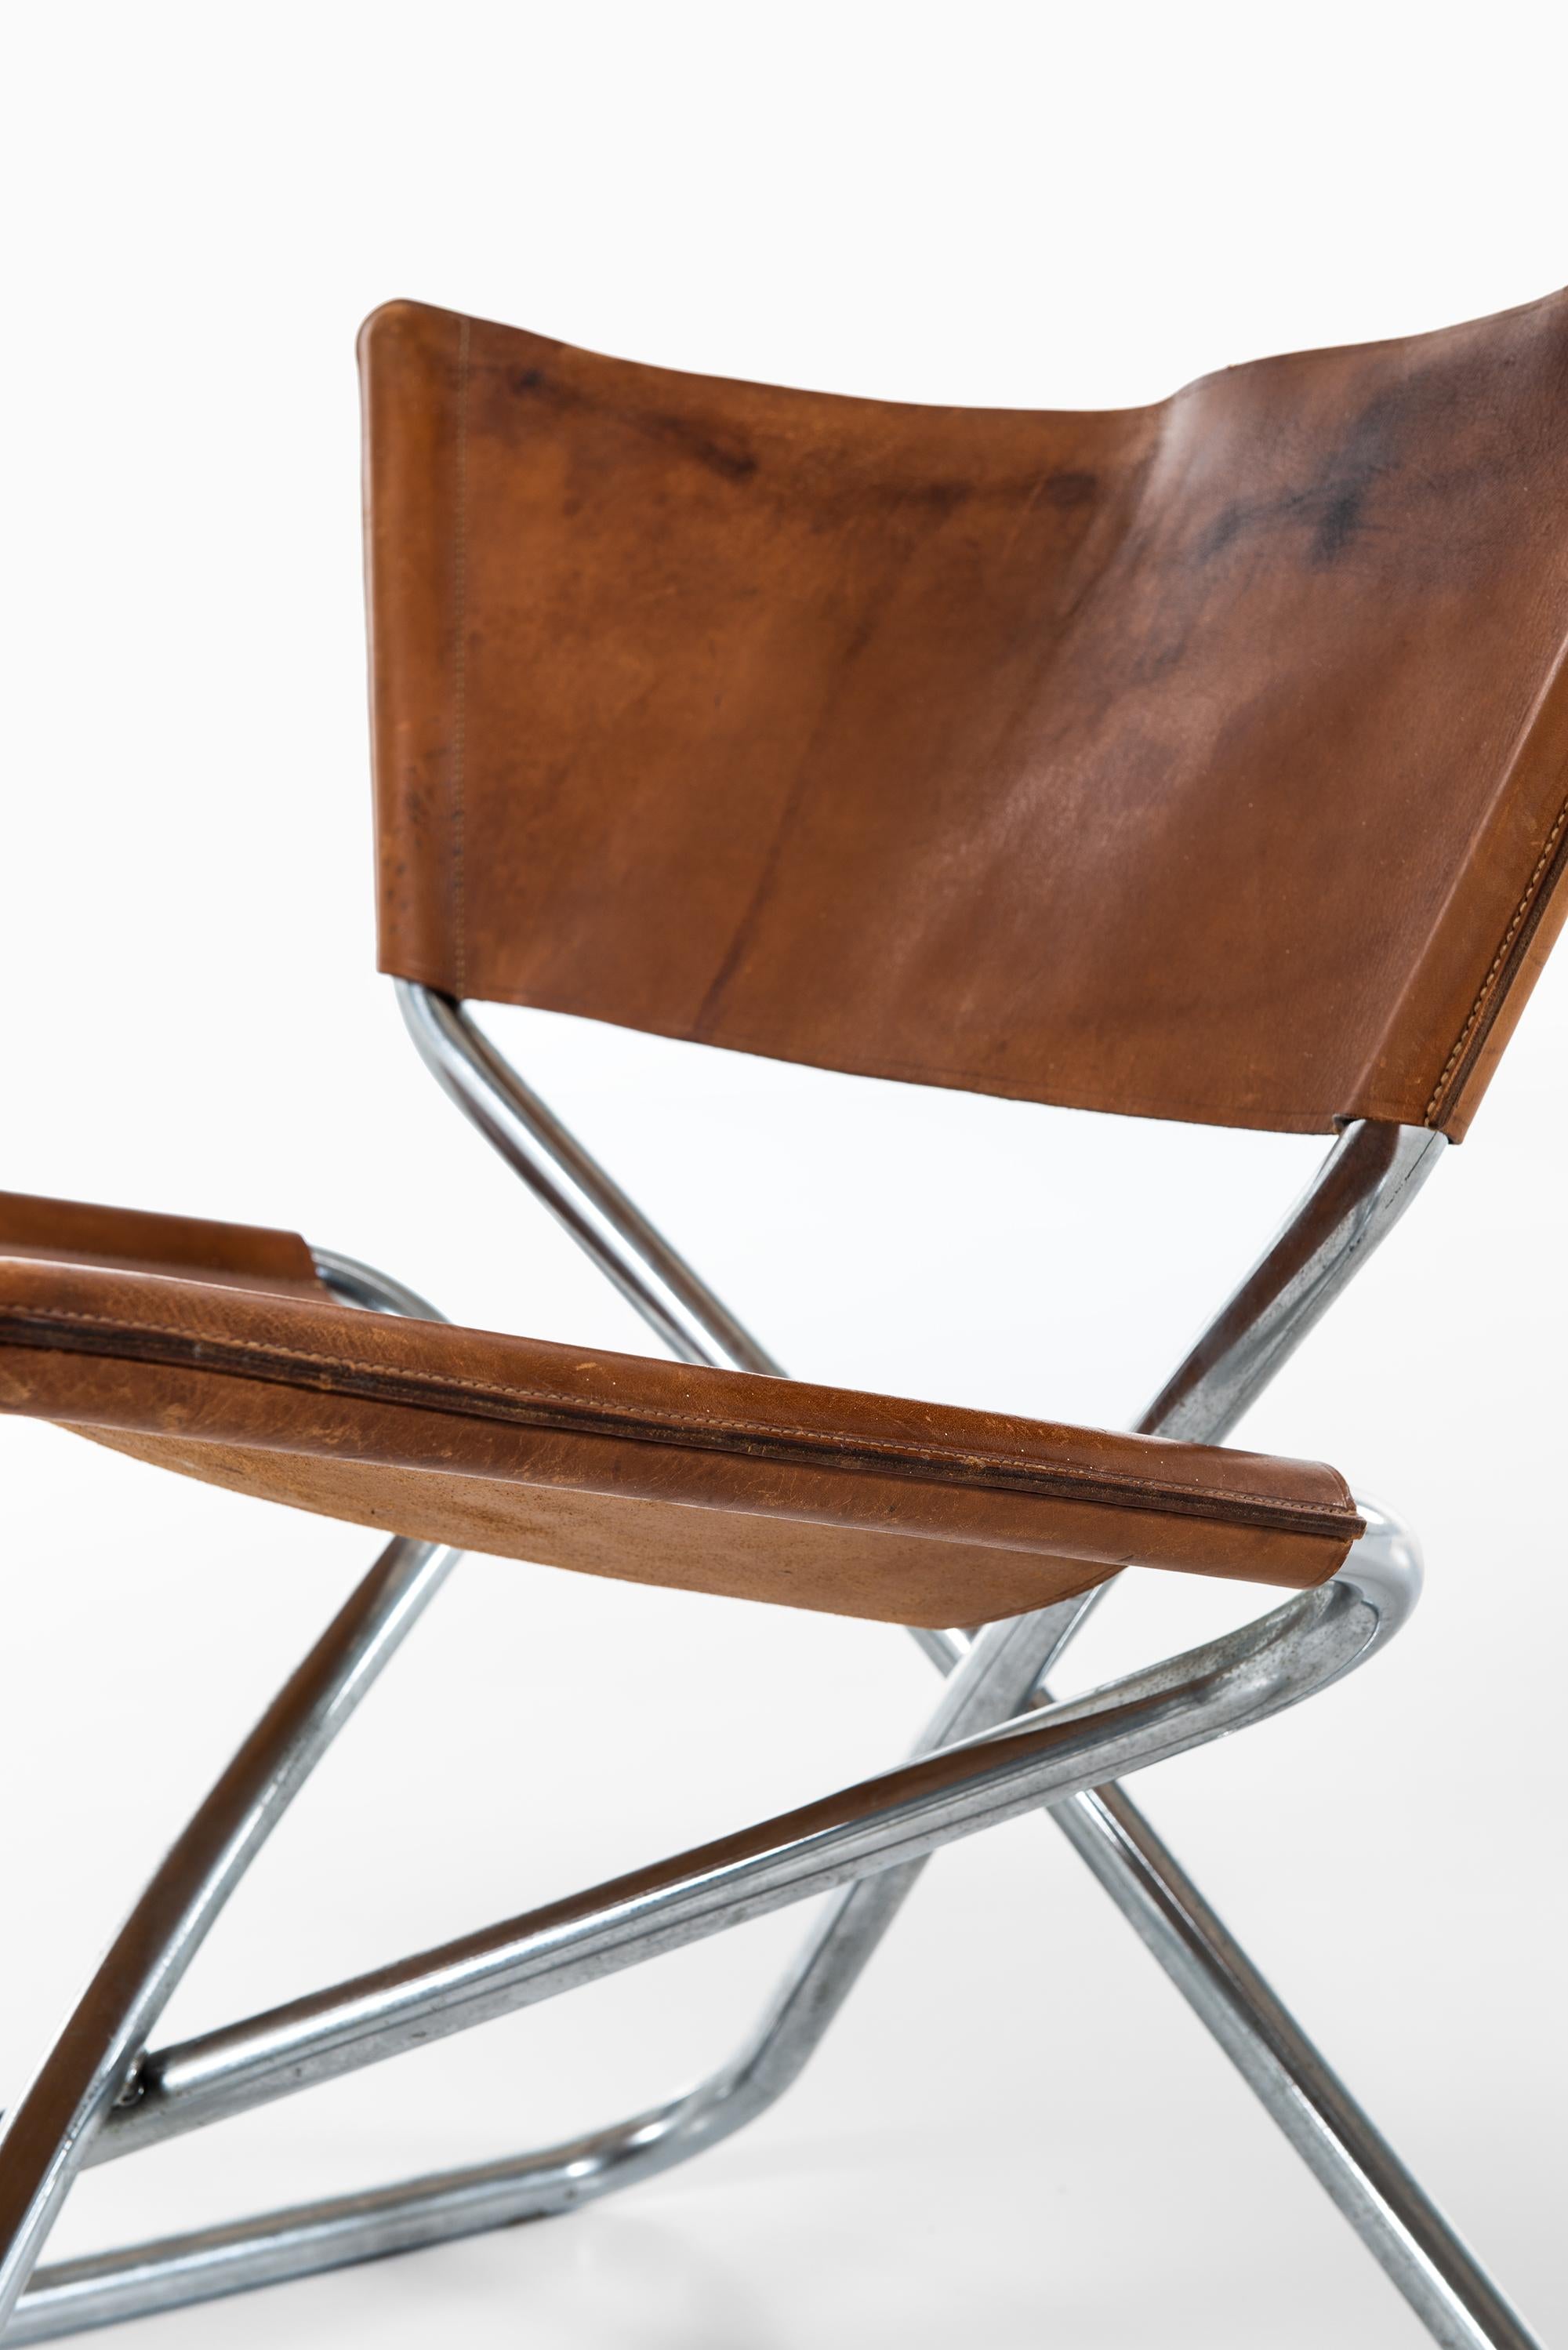 Seltenes Paar Z-Sessel, entworfen von Erik Magnussen. Produziert von Torben Ørskov in Dänemark.